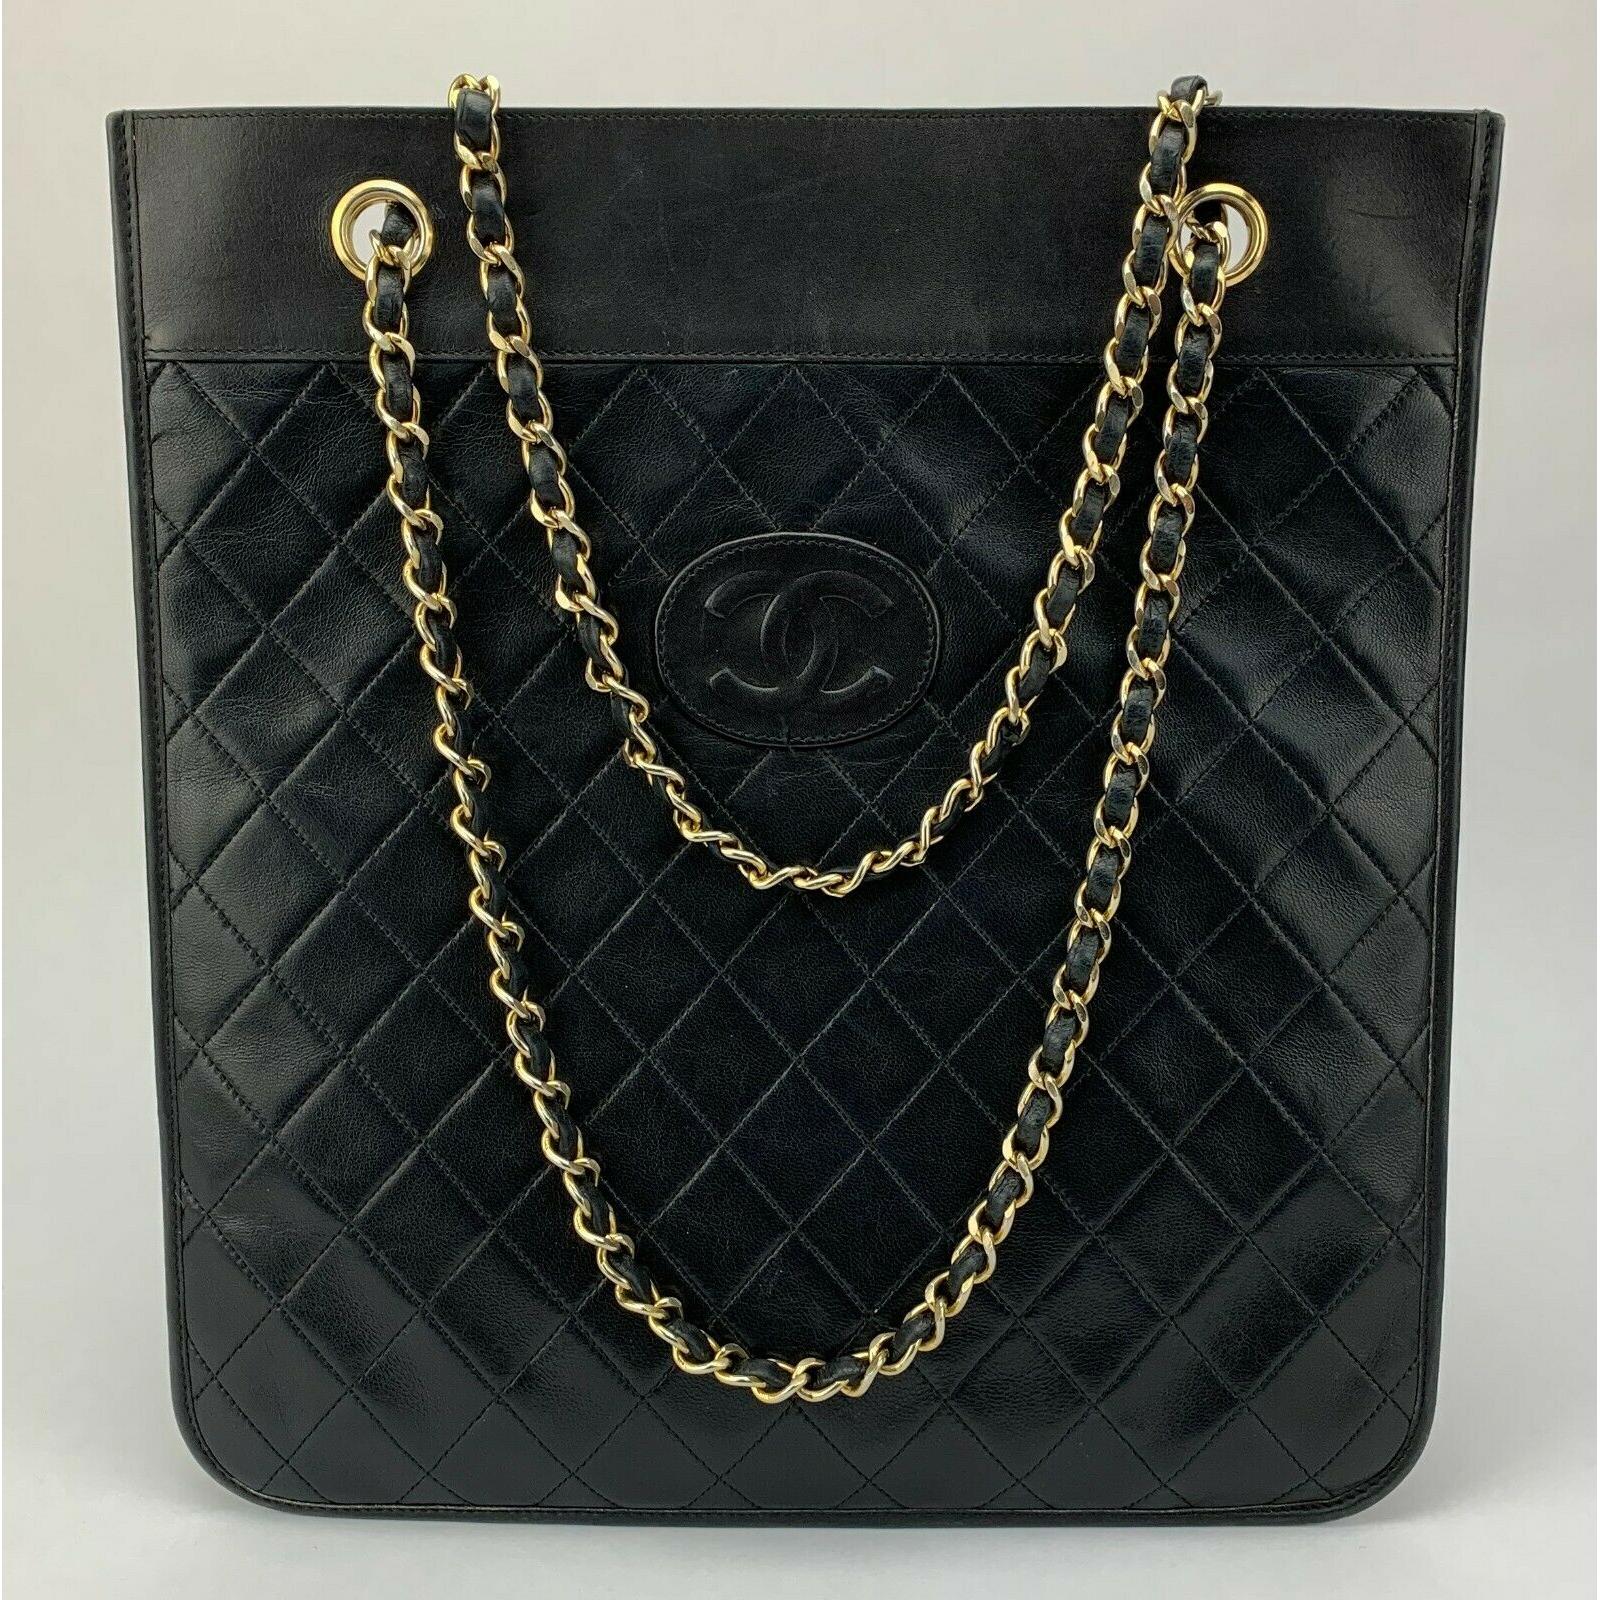 Vintage Chanel Flat Tote Lambskin Leather Shoulder Bag Black